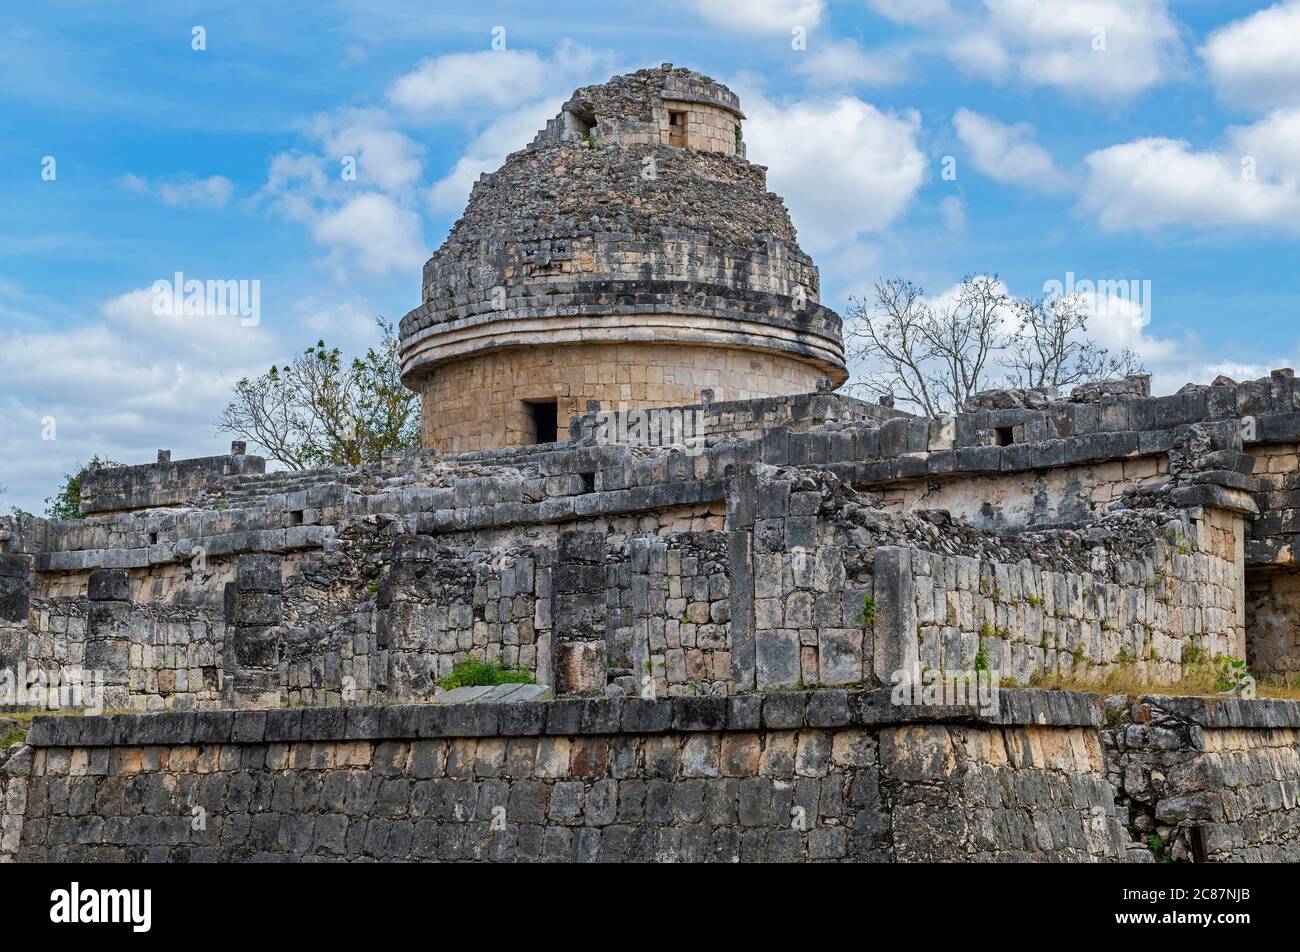 Der maya-Observatorium Turm von El Caracol, Chichen Itza, Yucatan Halbinsel, Mexiko. Stockfoto